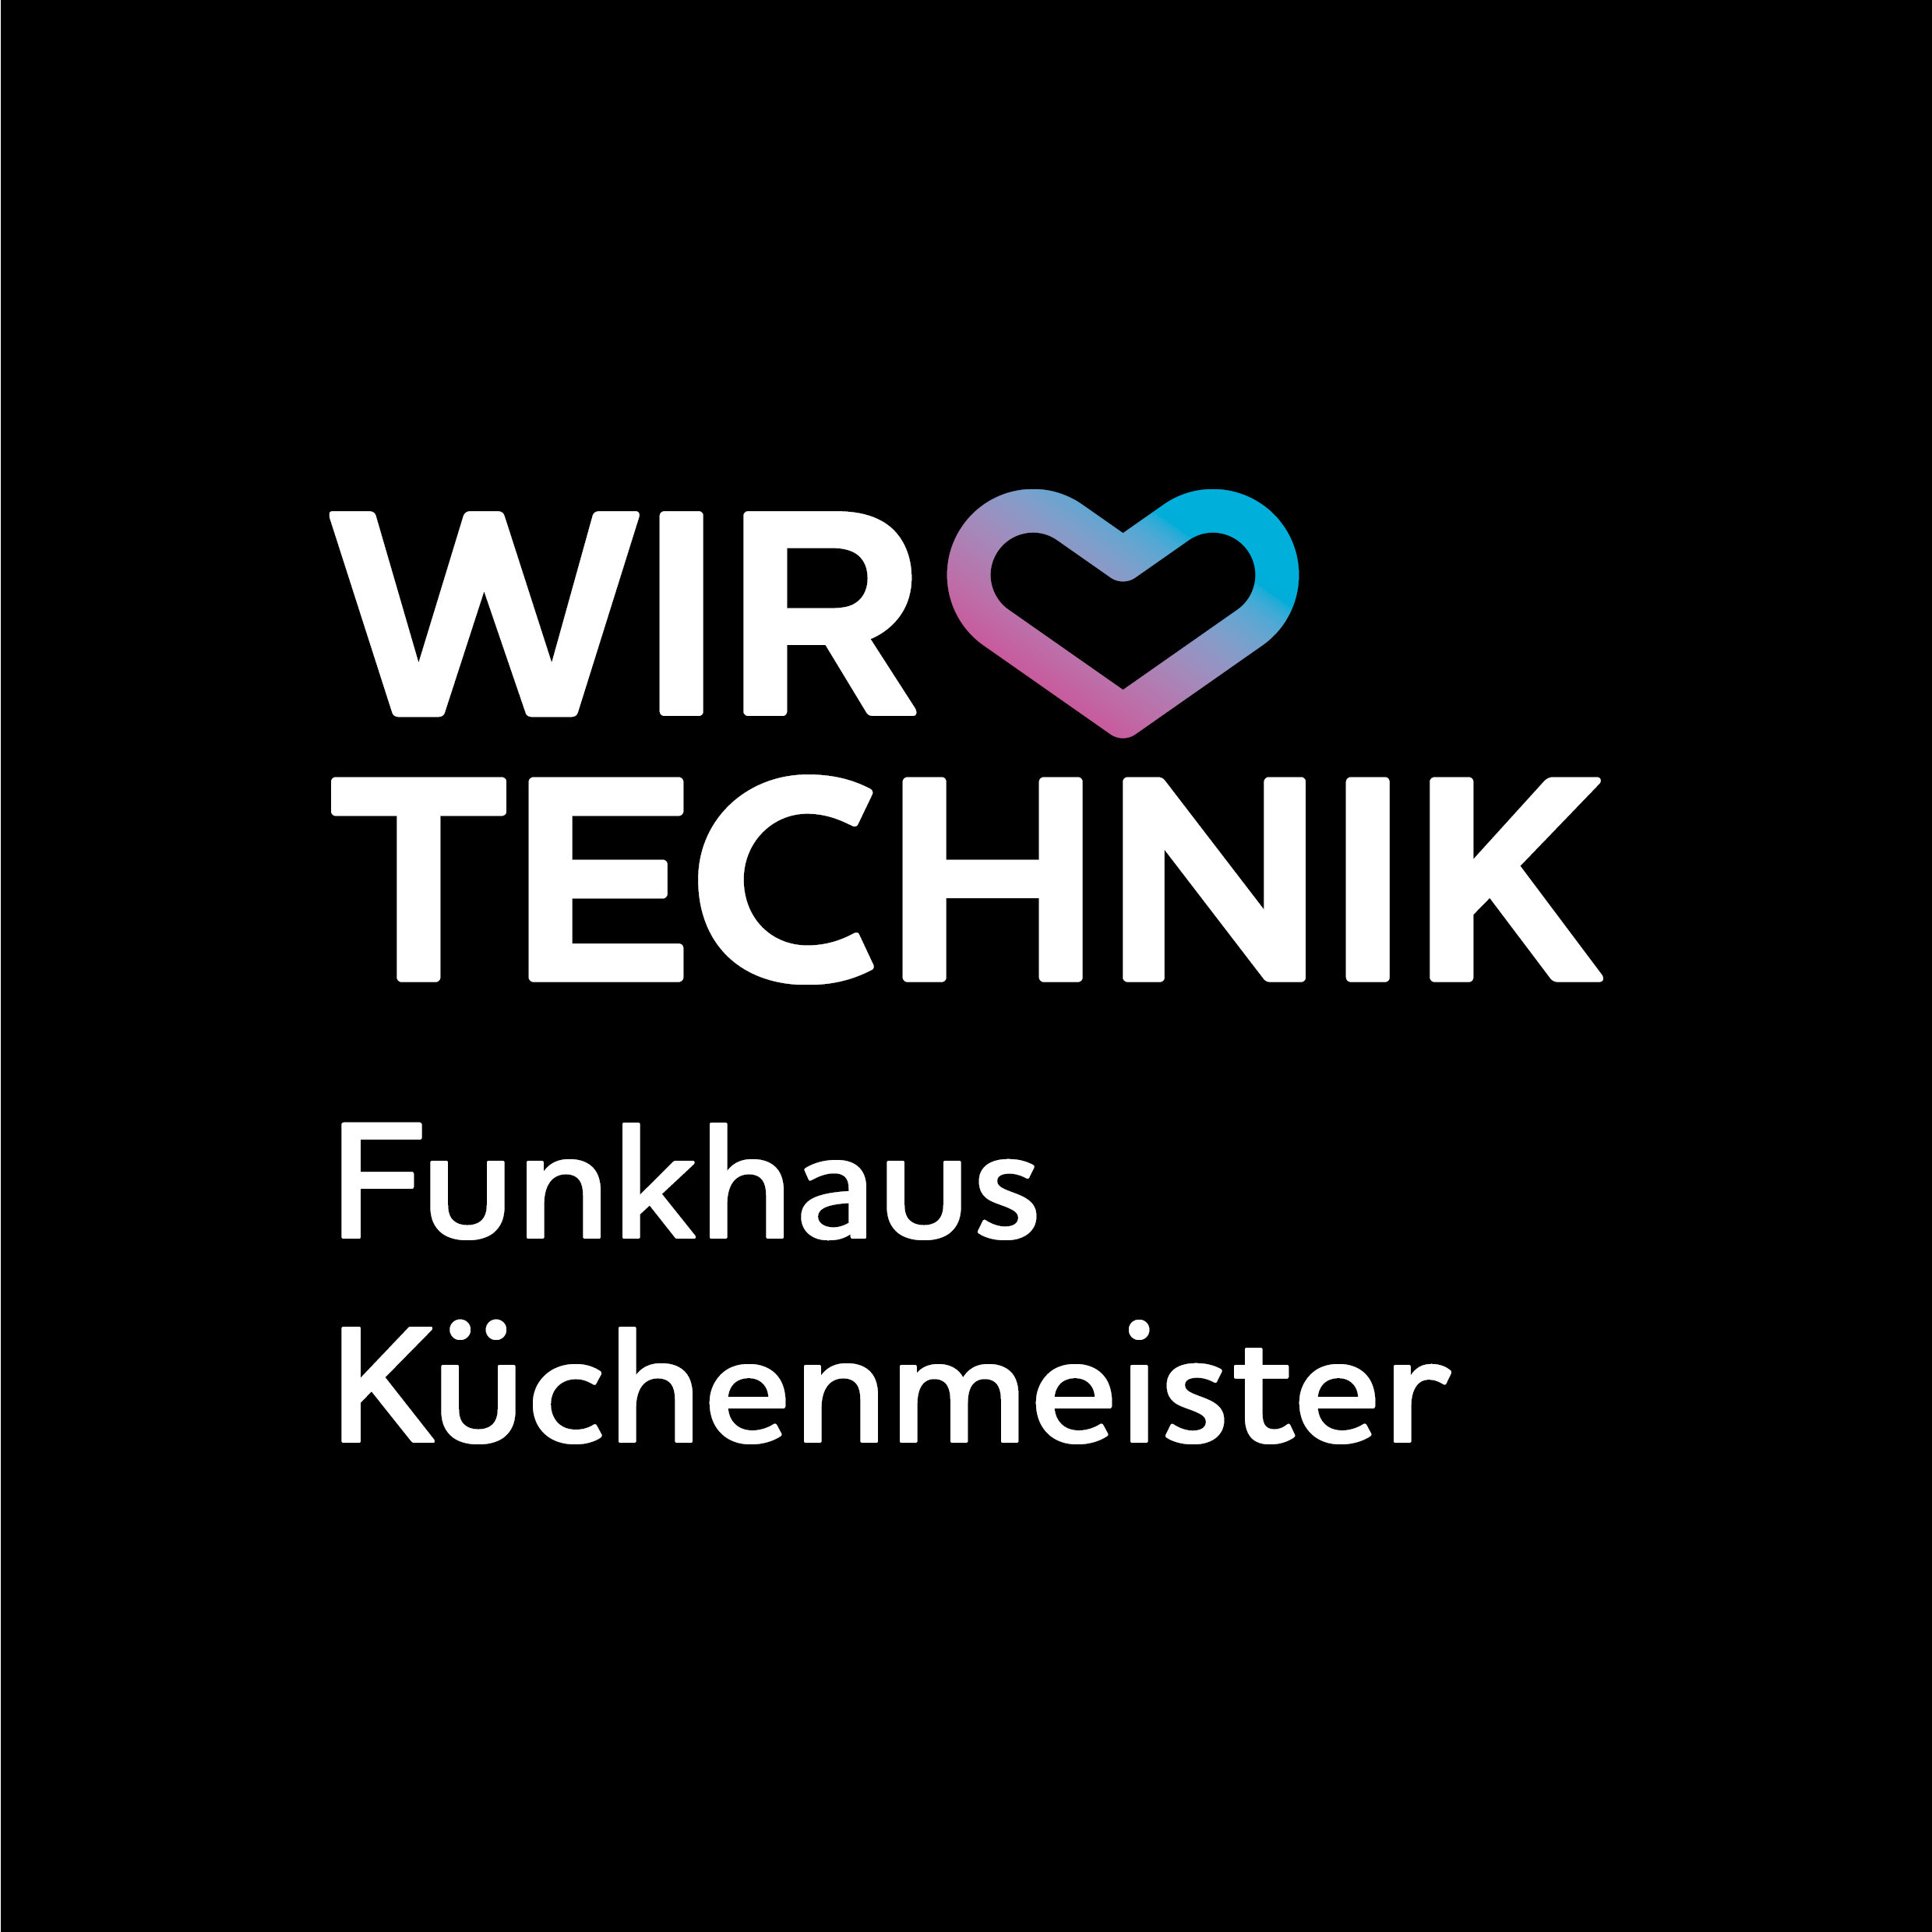 Wir lieben Technik Funkhaus Küchenmeister Schwerin 0385 5815031